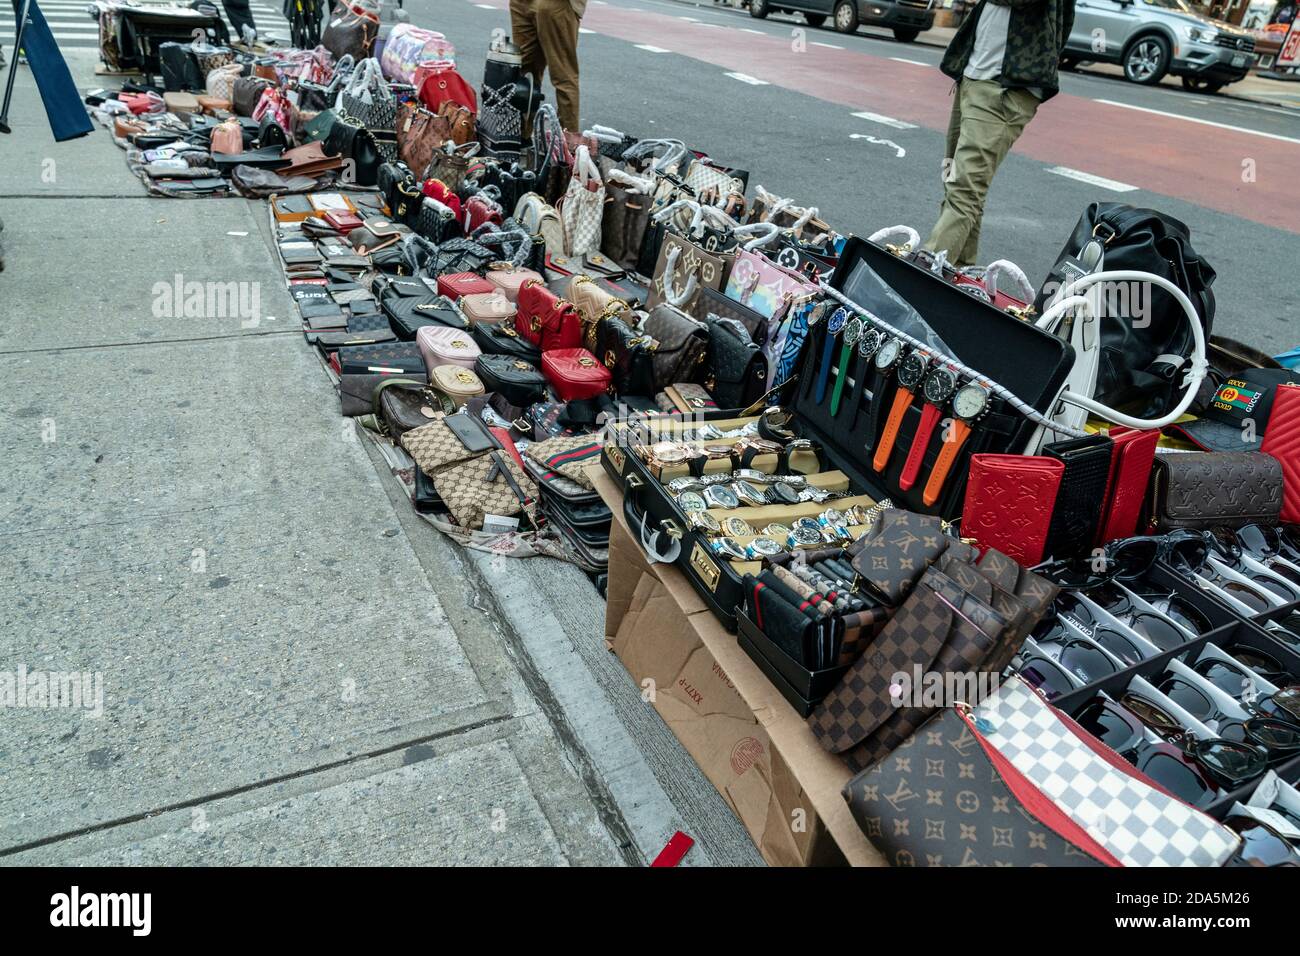 New York, NY - November 9, 2020: Street vendors sell counterfeits